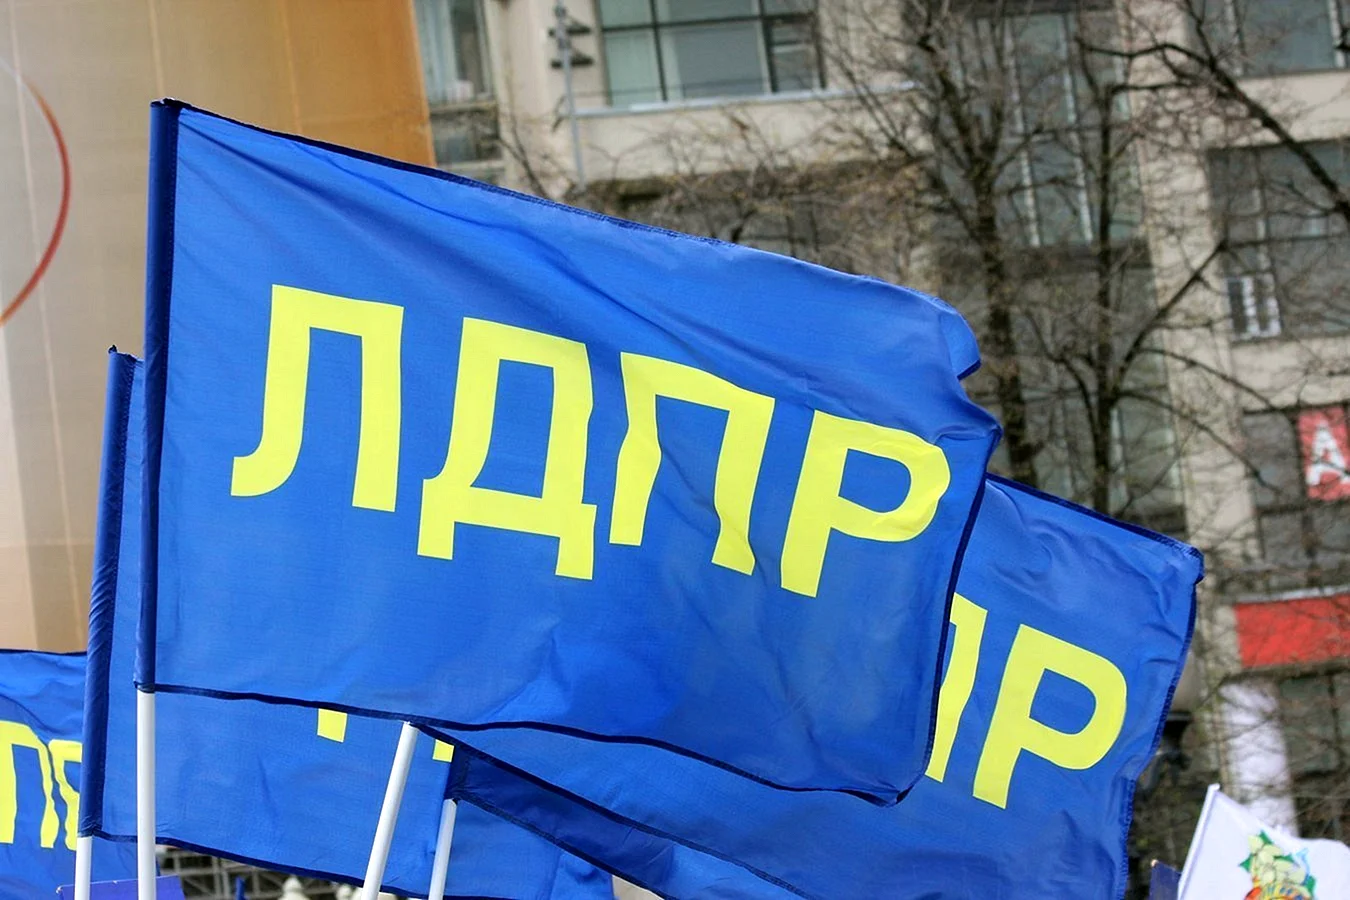 ЛДПР - Либерально-Демократическая партия России флаг